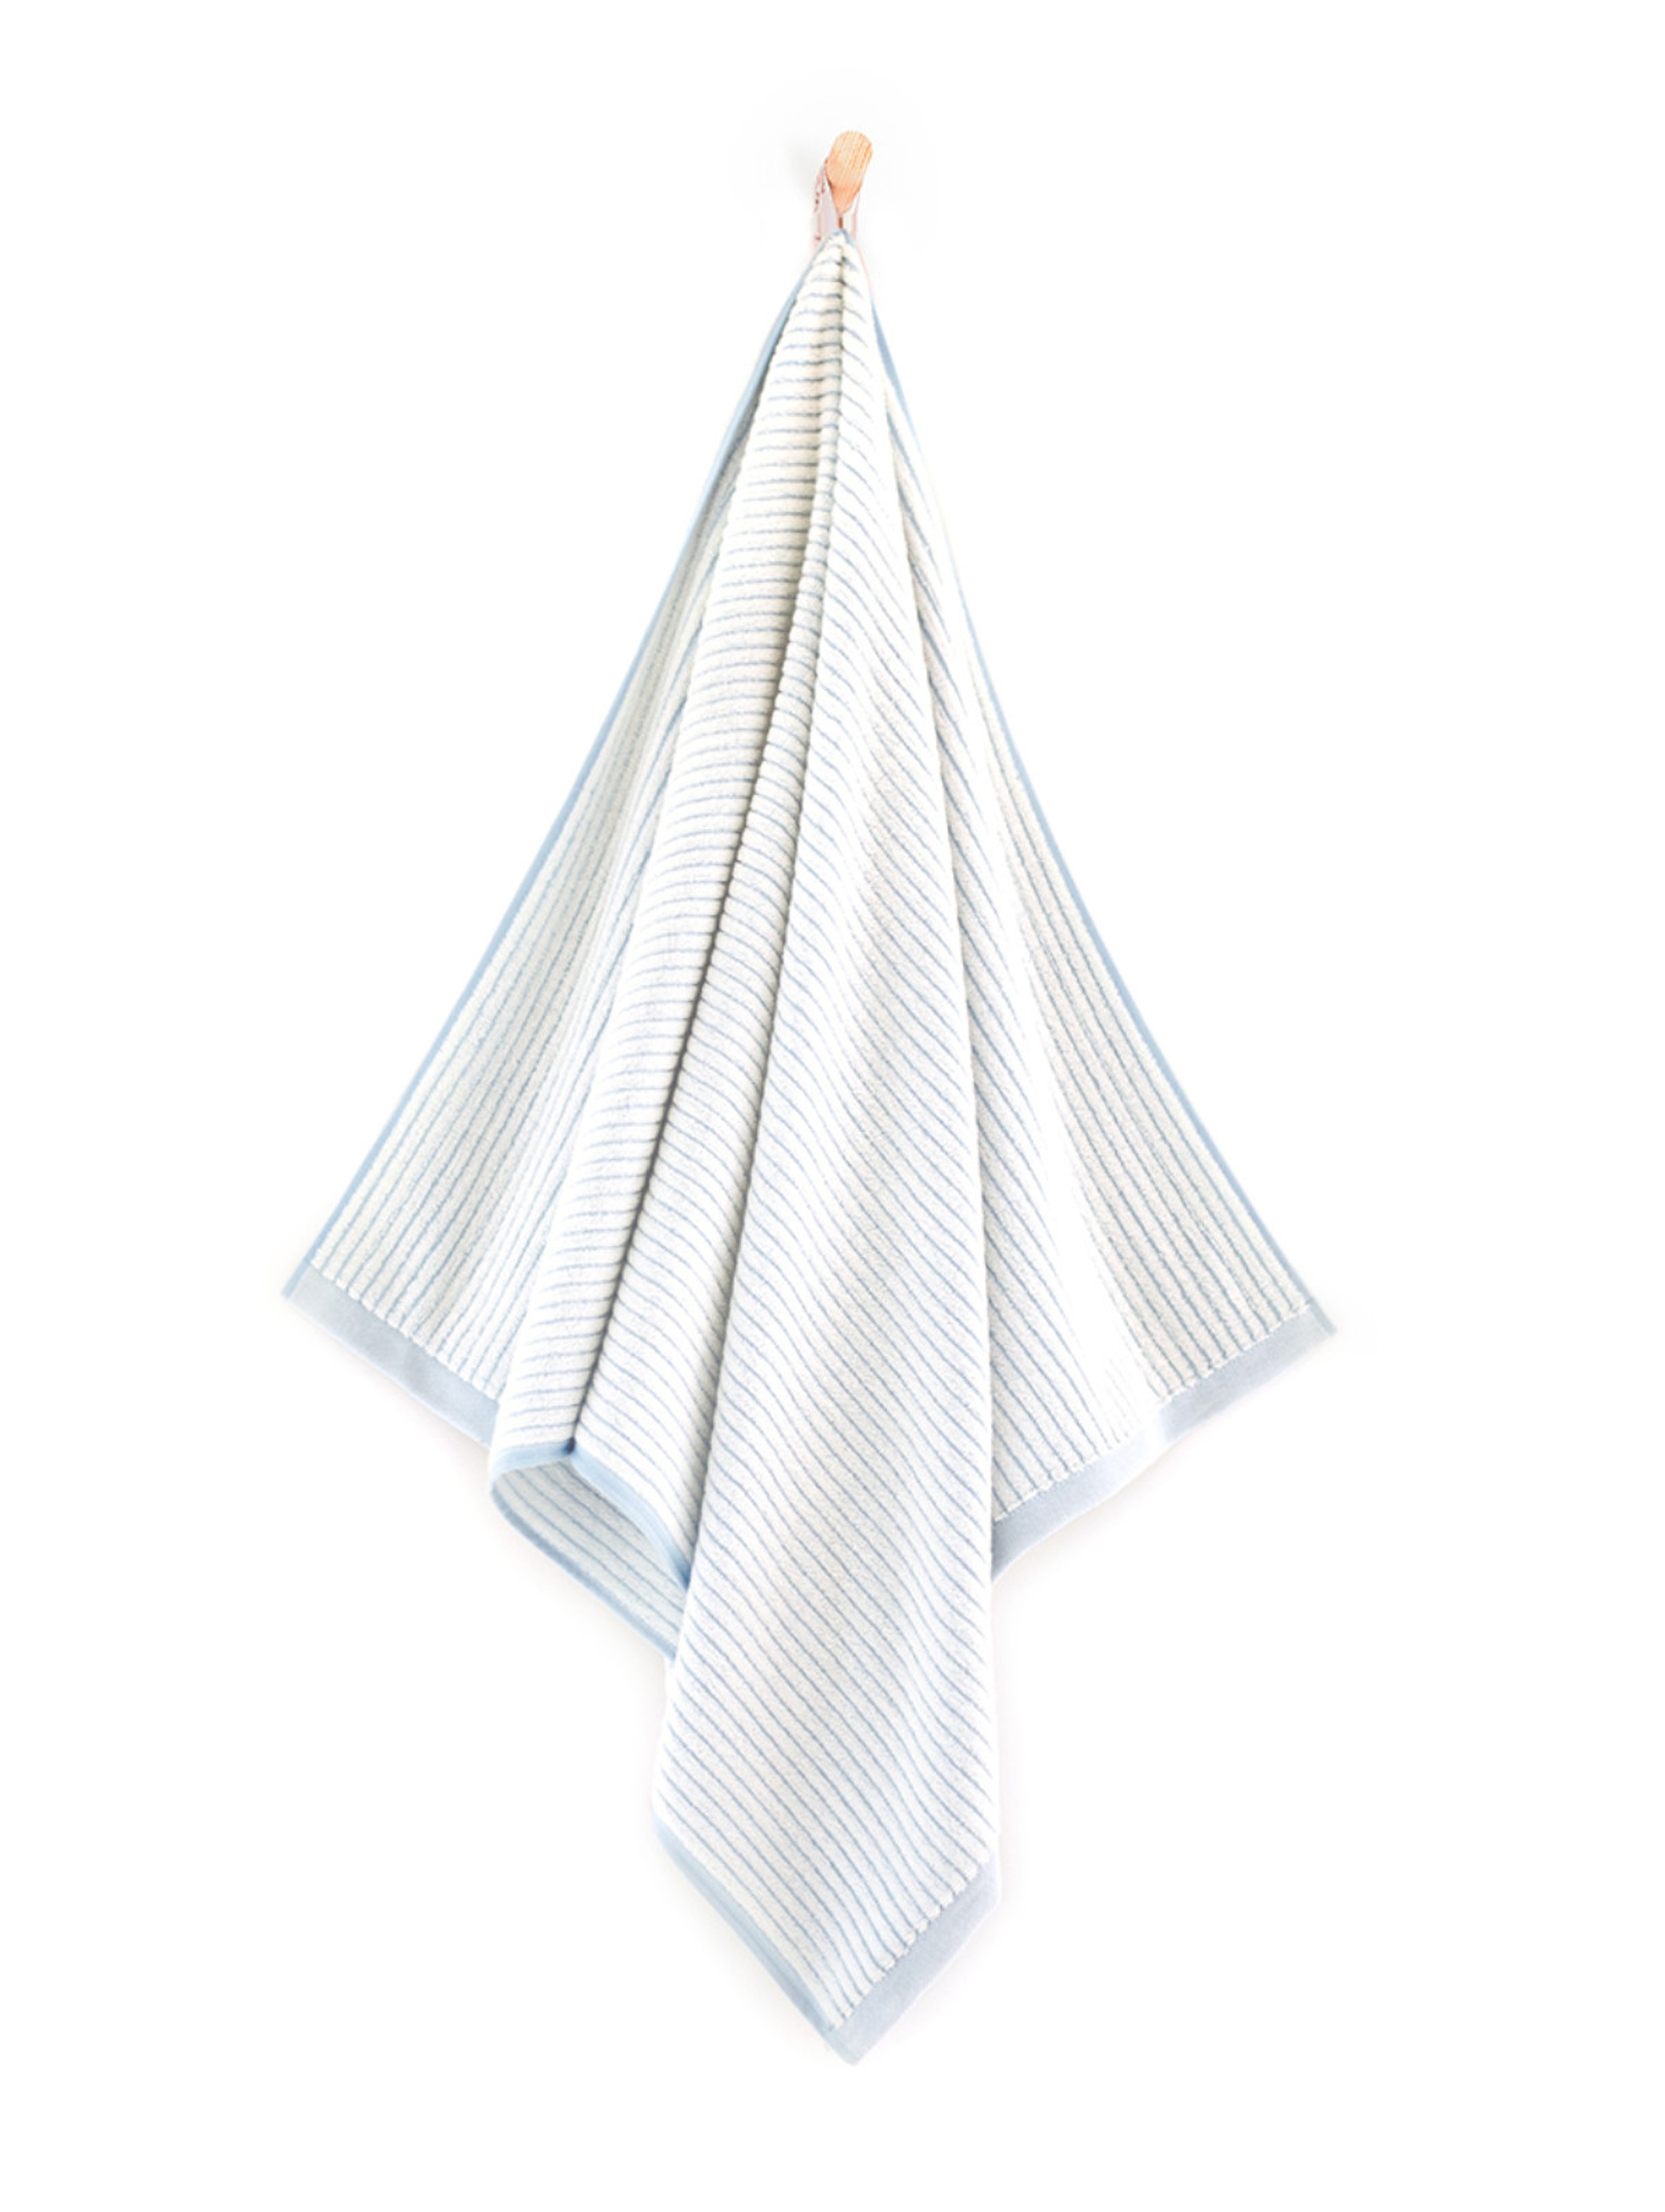 Ręcznik Malme z bawełny egipskiej niebieski 70x140cm